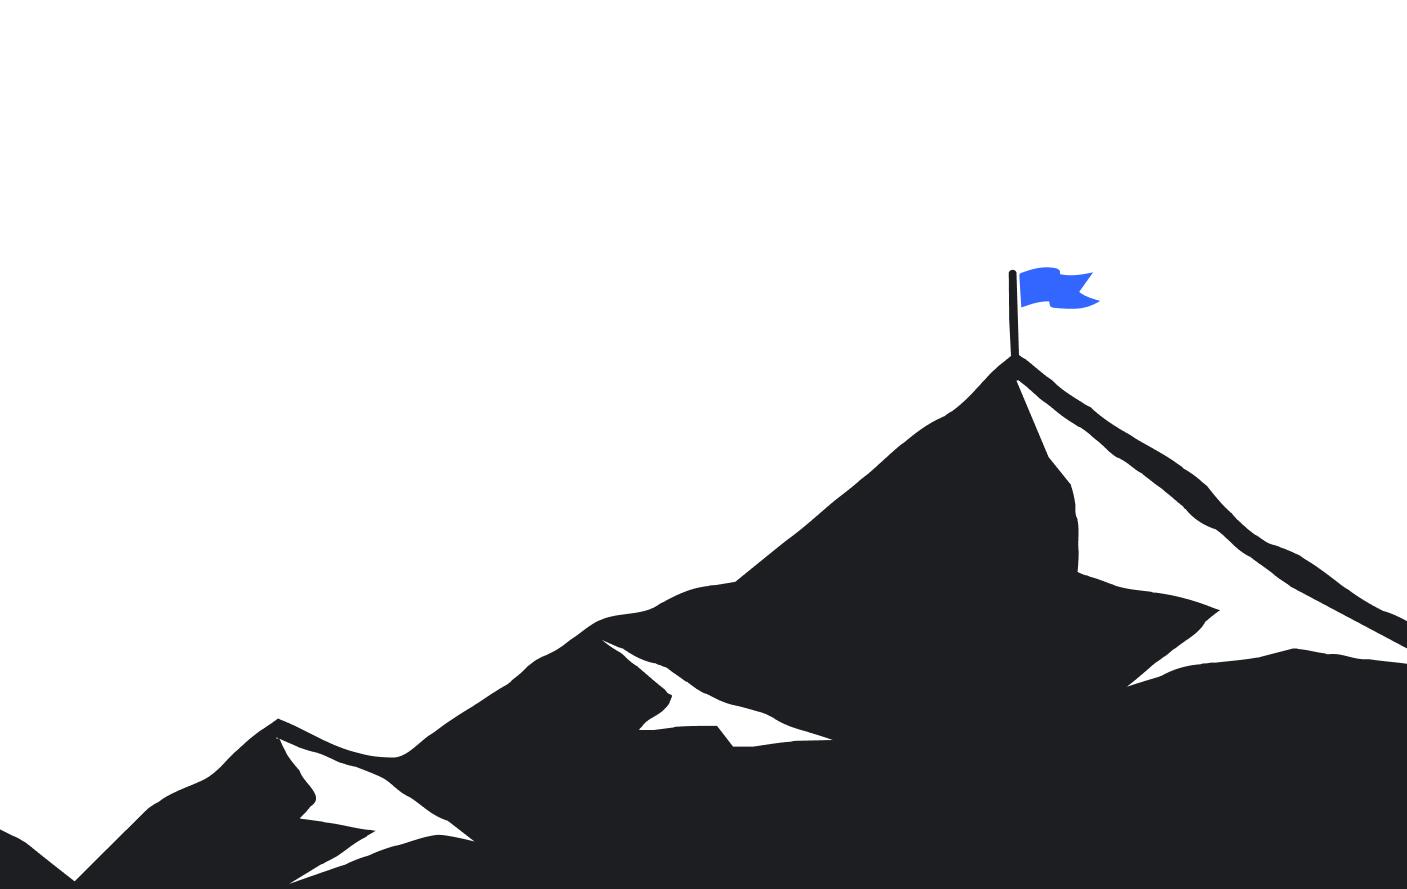 Montanha em rachuras pretas com bandeira azul no topo. Trata-se do novo elemento do branding do Gorila